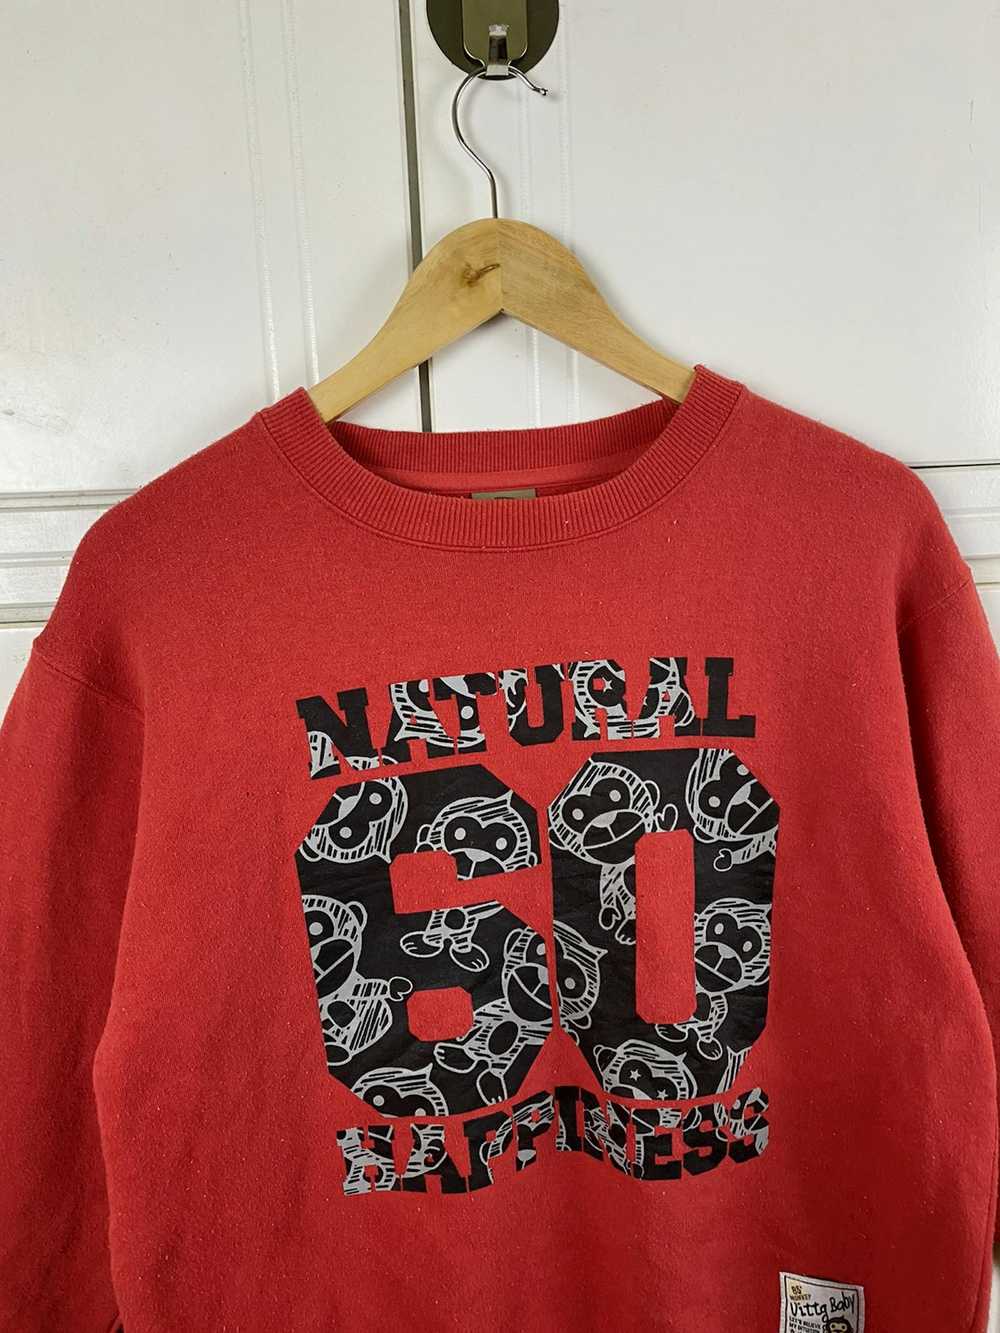 Japanese Brand × Vintage Uittg Baby Sweatshirt - image 2